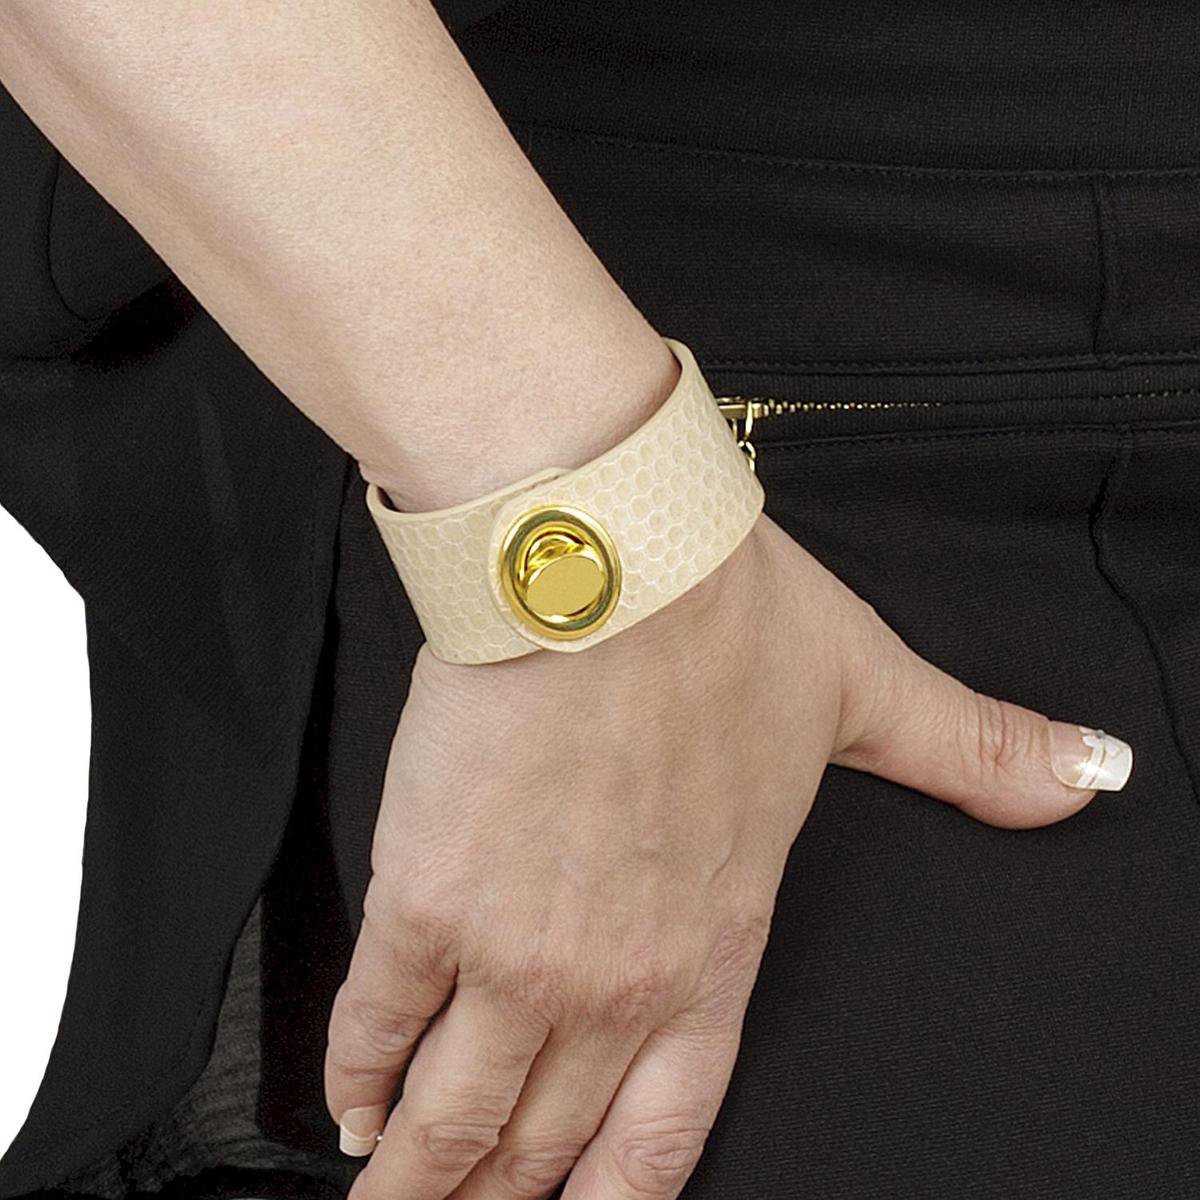 NEW SALE van 74,00 EUR afgeprijsd, BELUCIA dames armband LK-02 kalfsleer shiny beige, goudkleurig, maat 17 cm